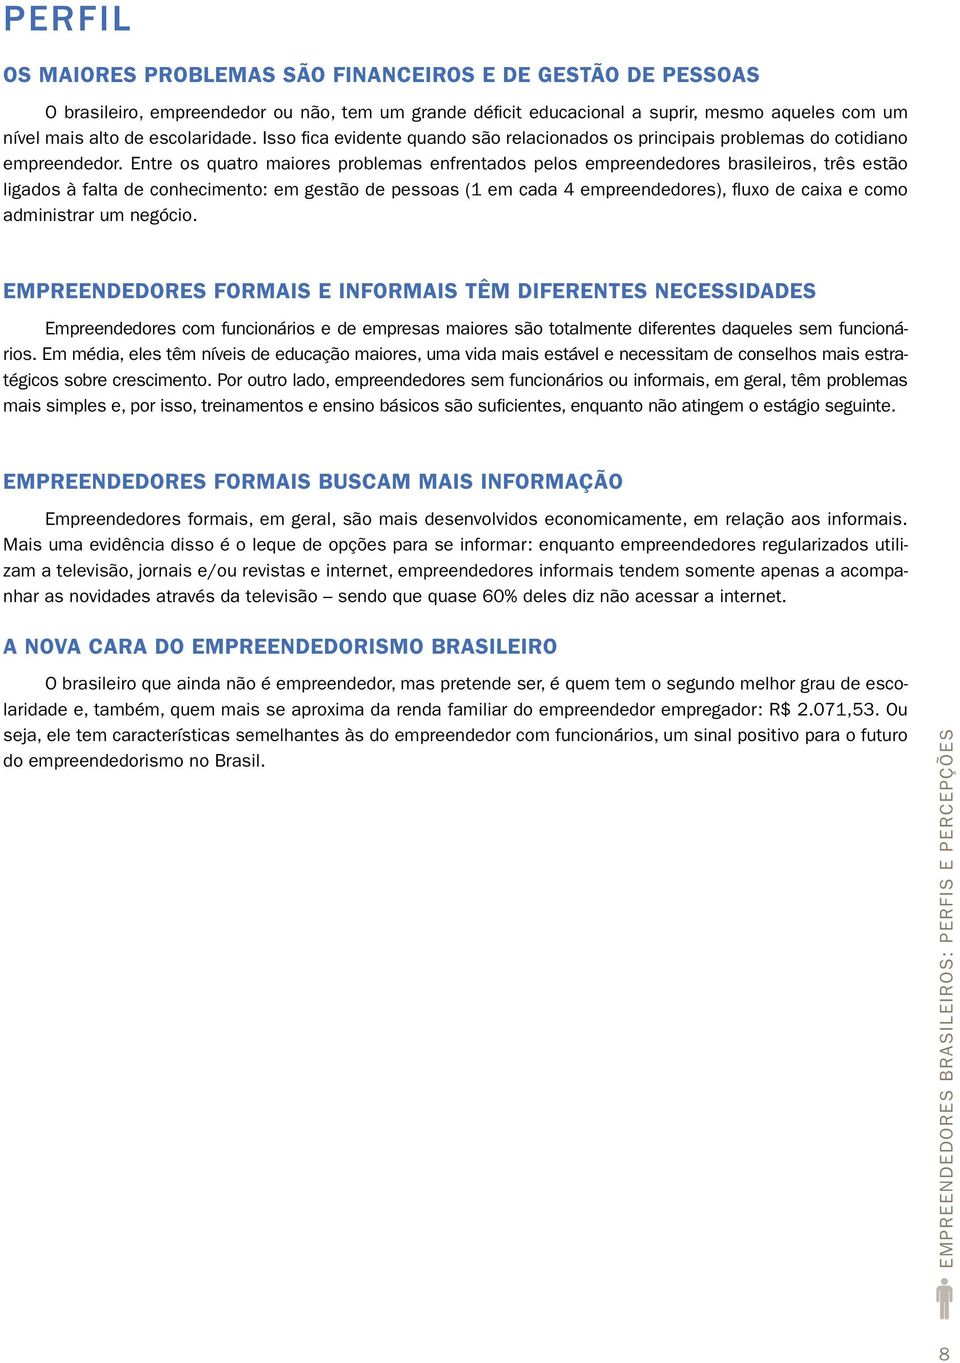 Entre os quatro maiores problemas enfrentados pelos empreendedores brasileiros, três estão ligados à falta de conhecimento: em gestão de pessoas (1 em cada 4 empreendedores), fluxo de caixa e como